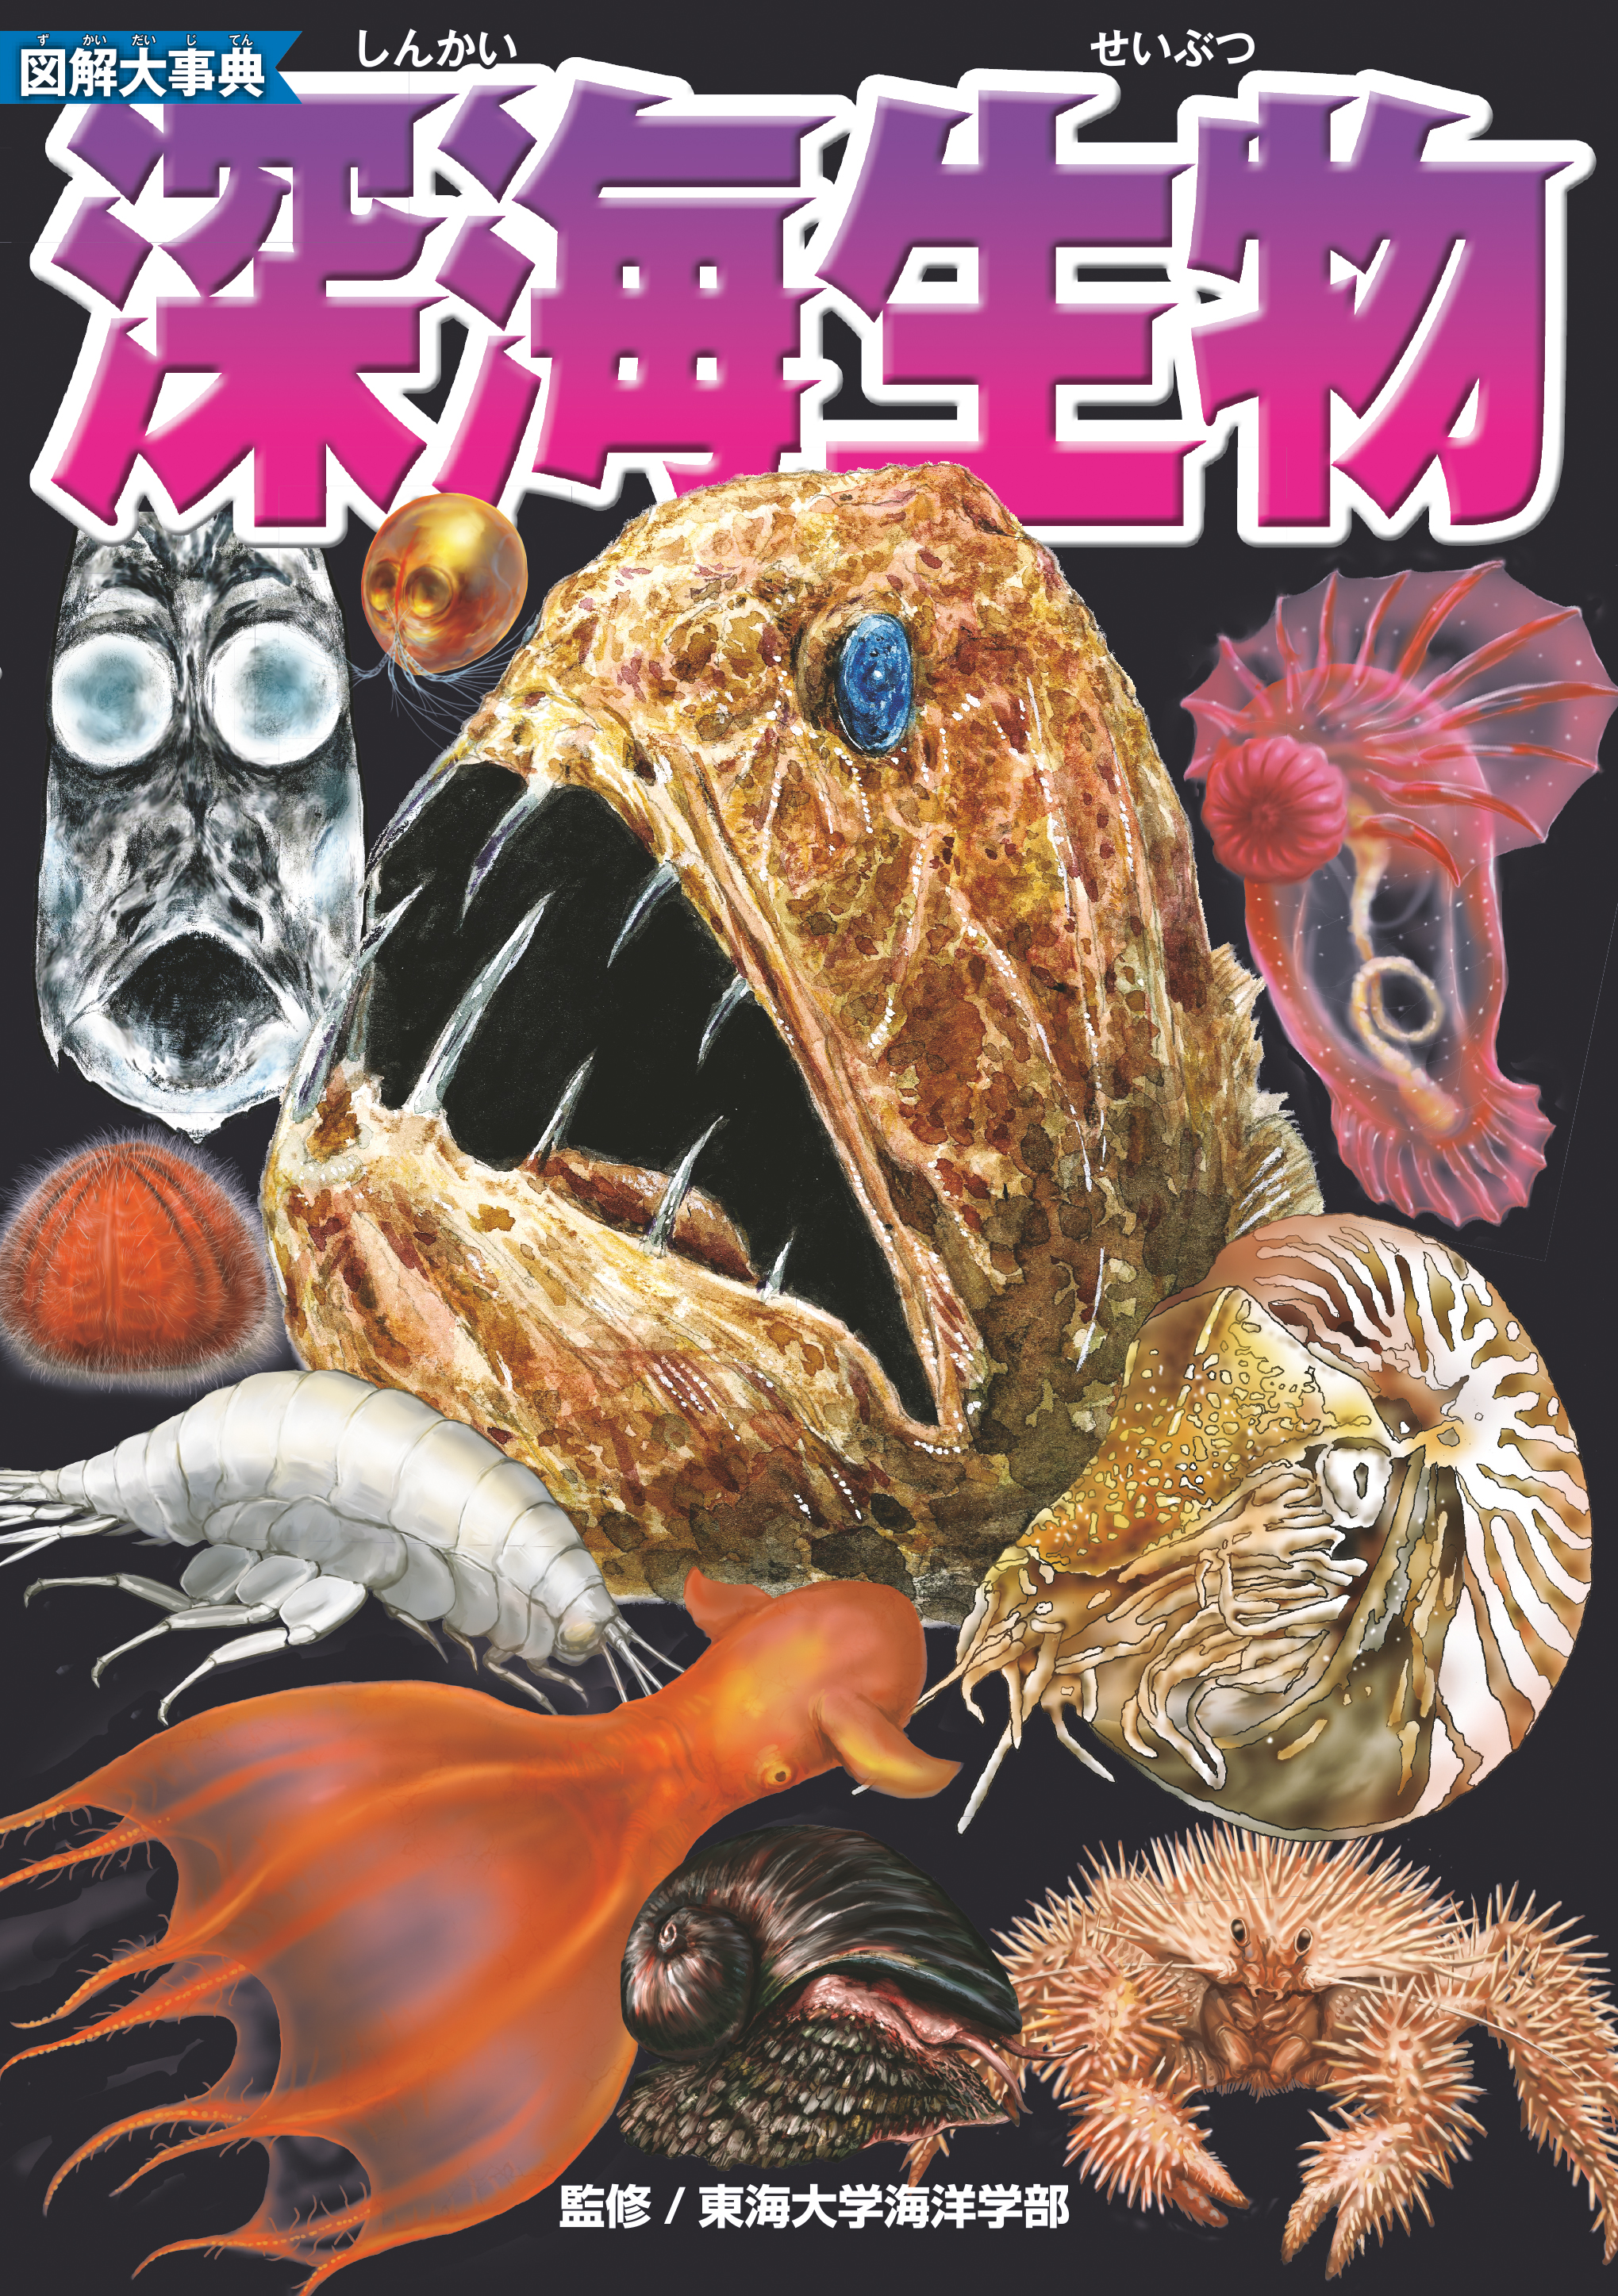 超リアル 深海生物が目の前に現れる 大人気シリーズの最新刊 図解大事典 深海生物 7月15日発売 Presswalker